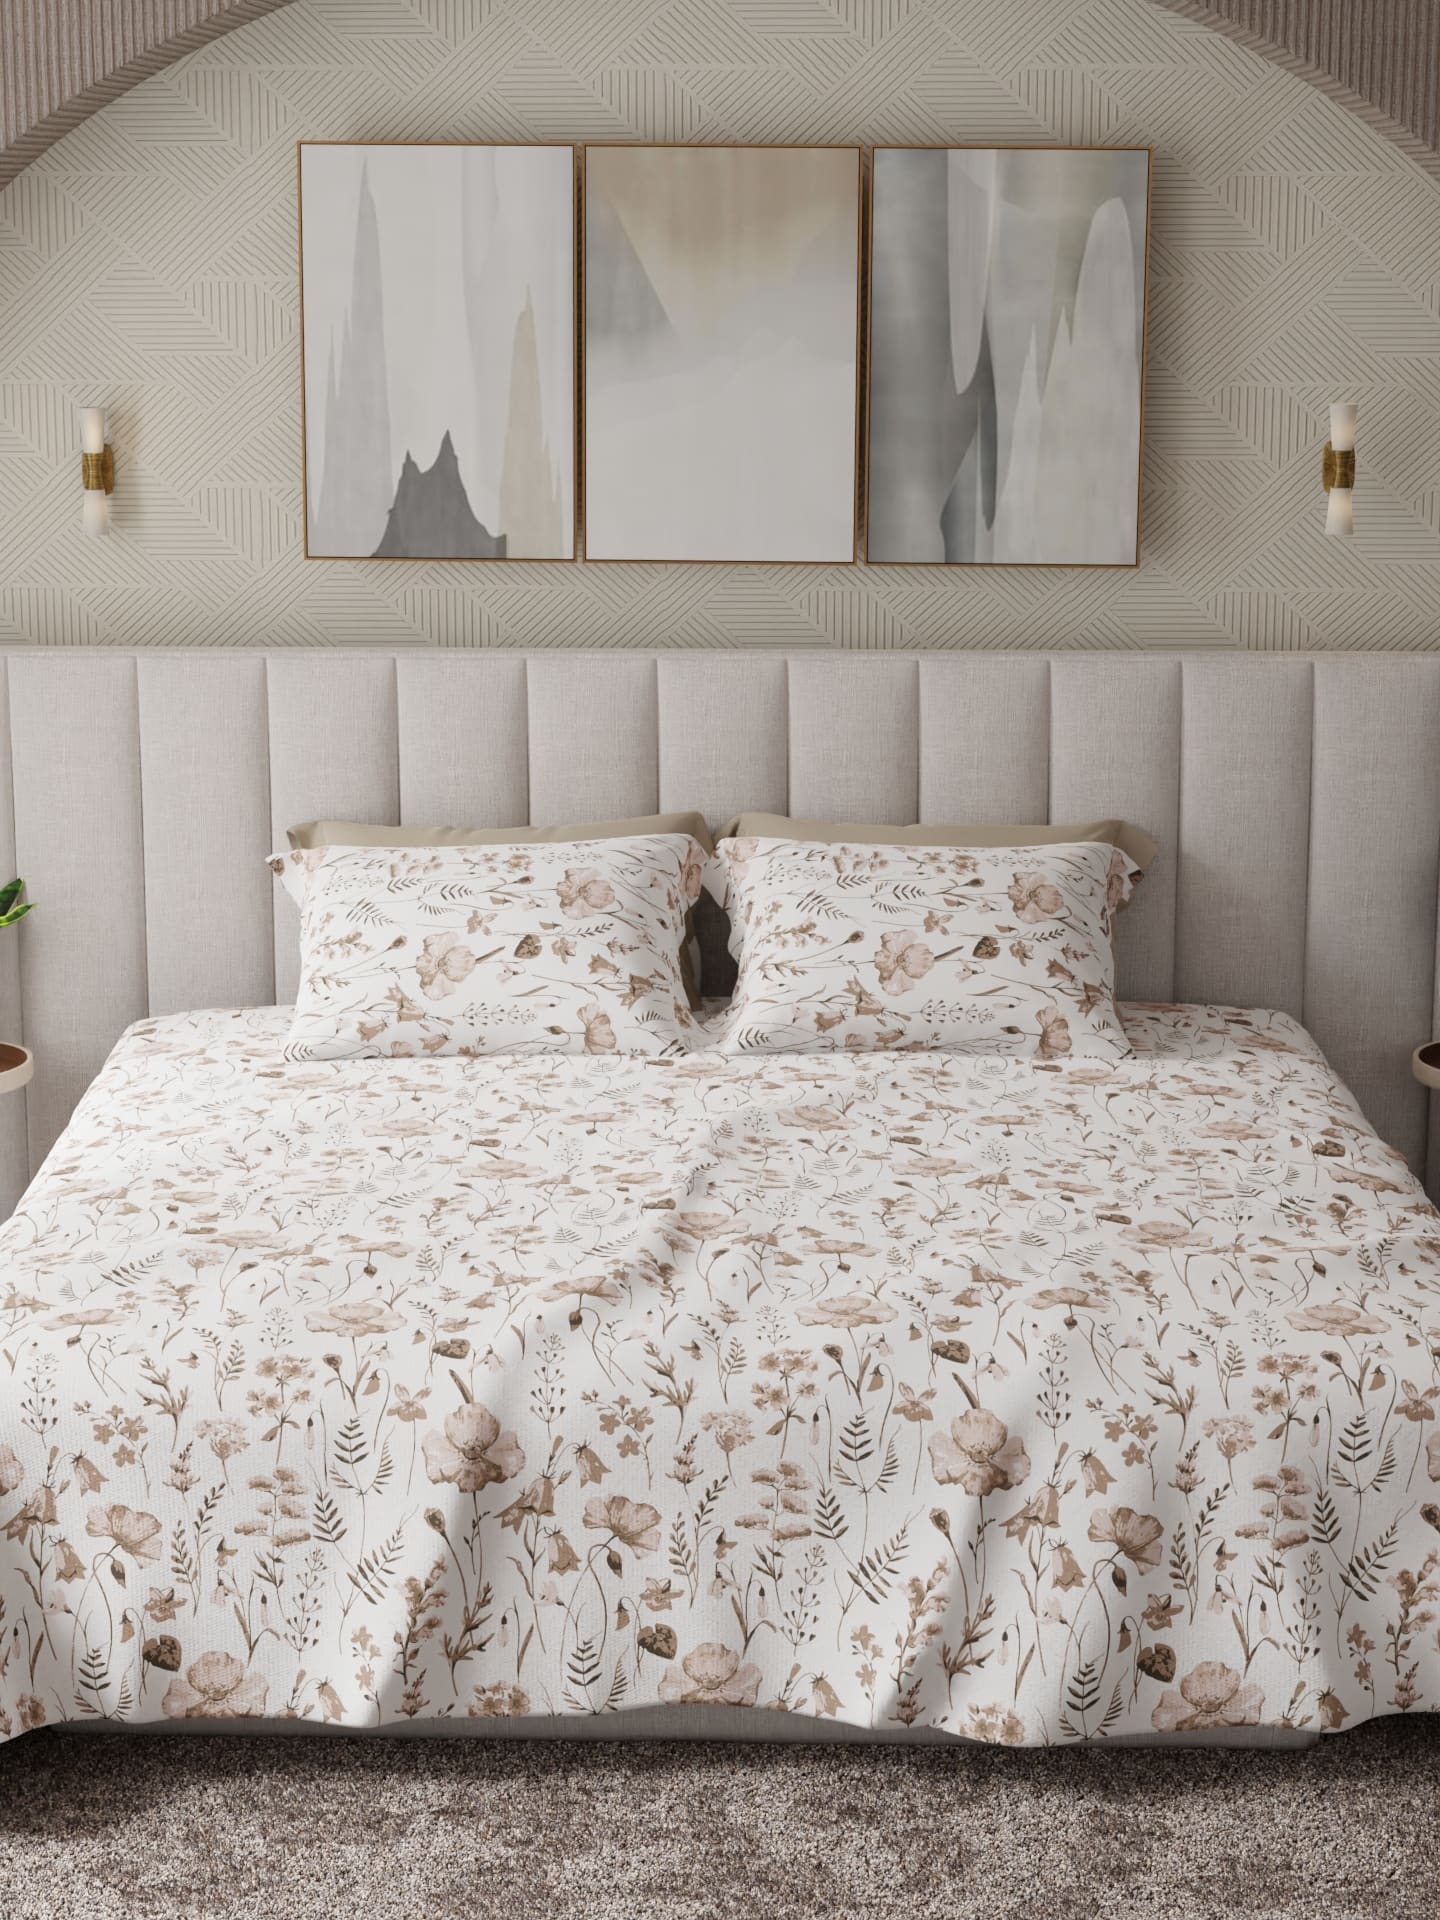 Urbanite Grey Printed Cotton Bed Sheet by Houmn - Home Artisan